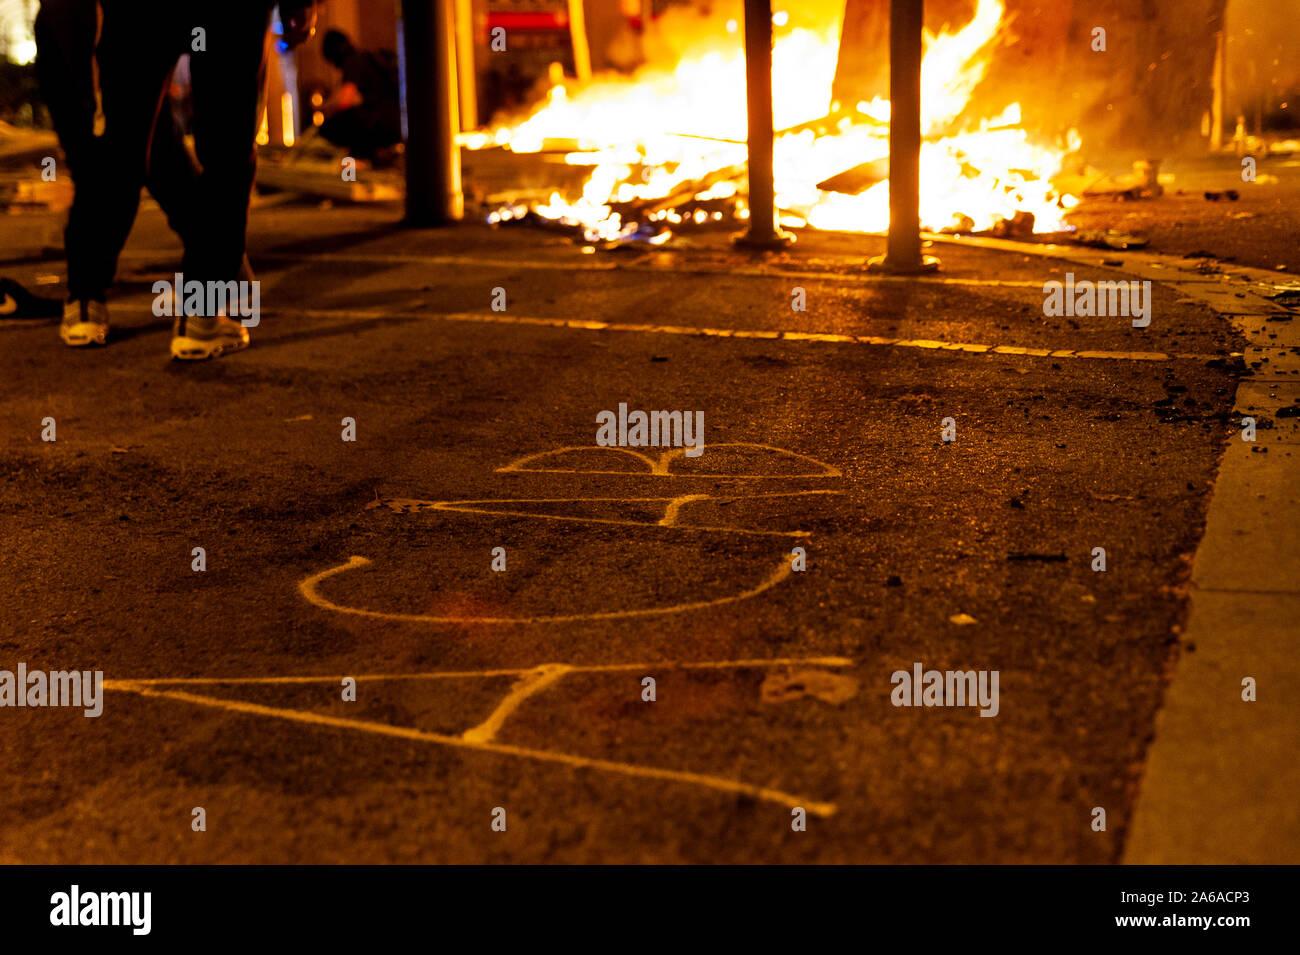 Barcellona, Spagna - 16 ottobre 2019: acab parola sulla strada asfaltata in montagna con il fuoco in background durante scontri e scontri con la polizia Foto Stock